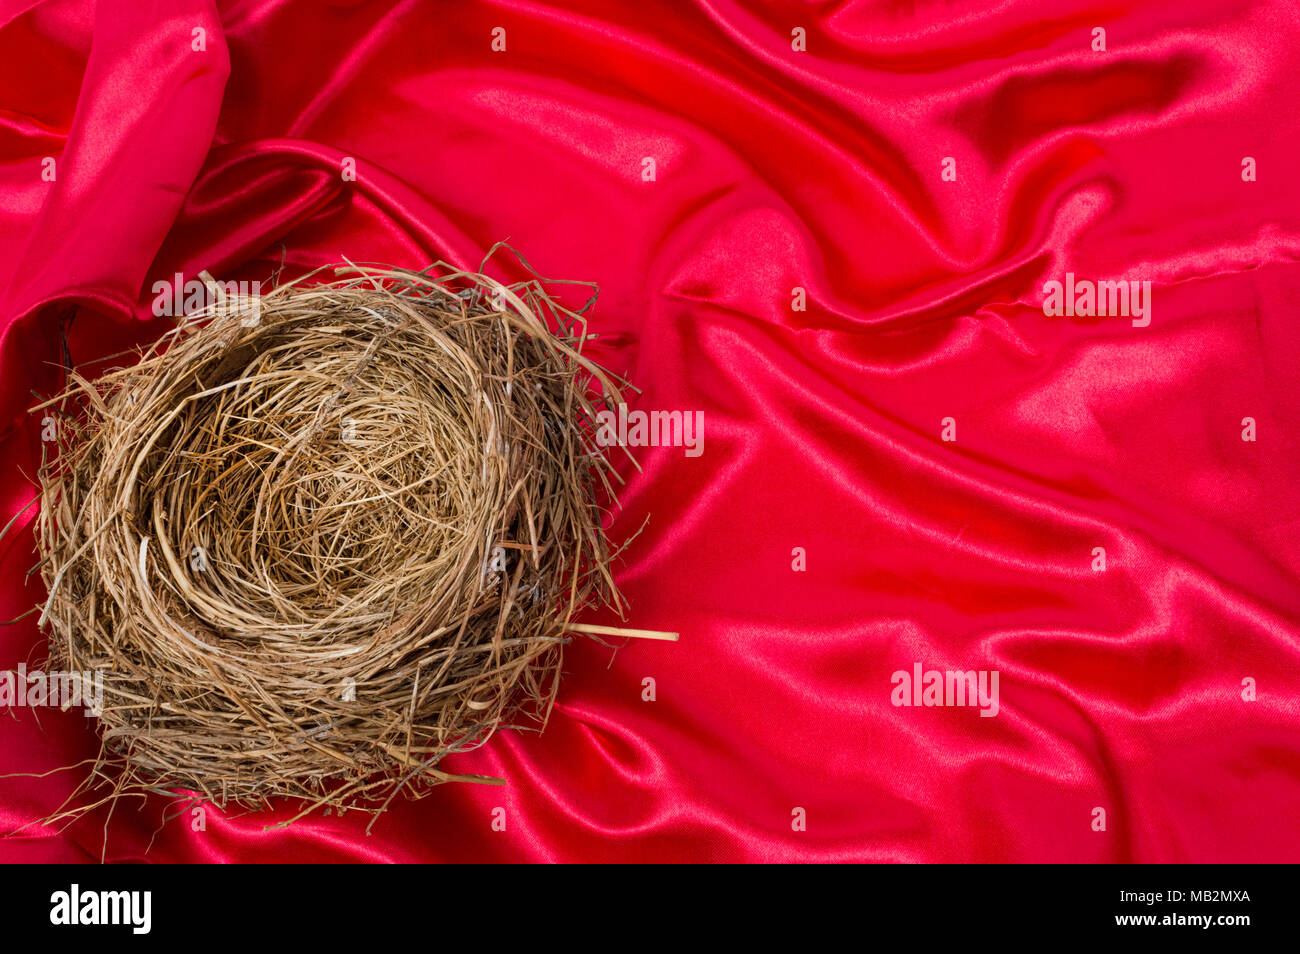 Inquadratura orizzontale di un nido nell'angolo inferiore sinistro del tiro su un bel raso rosso sfondo. Focus è il nido. Foto Stock